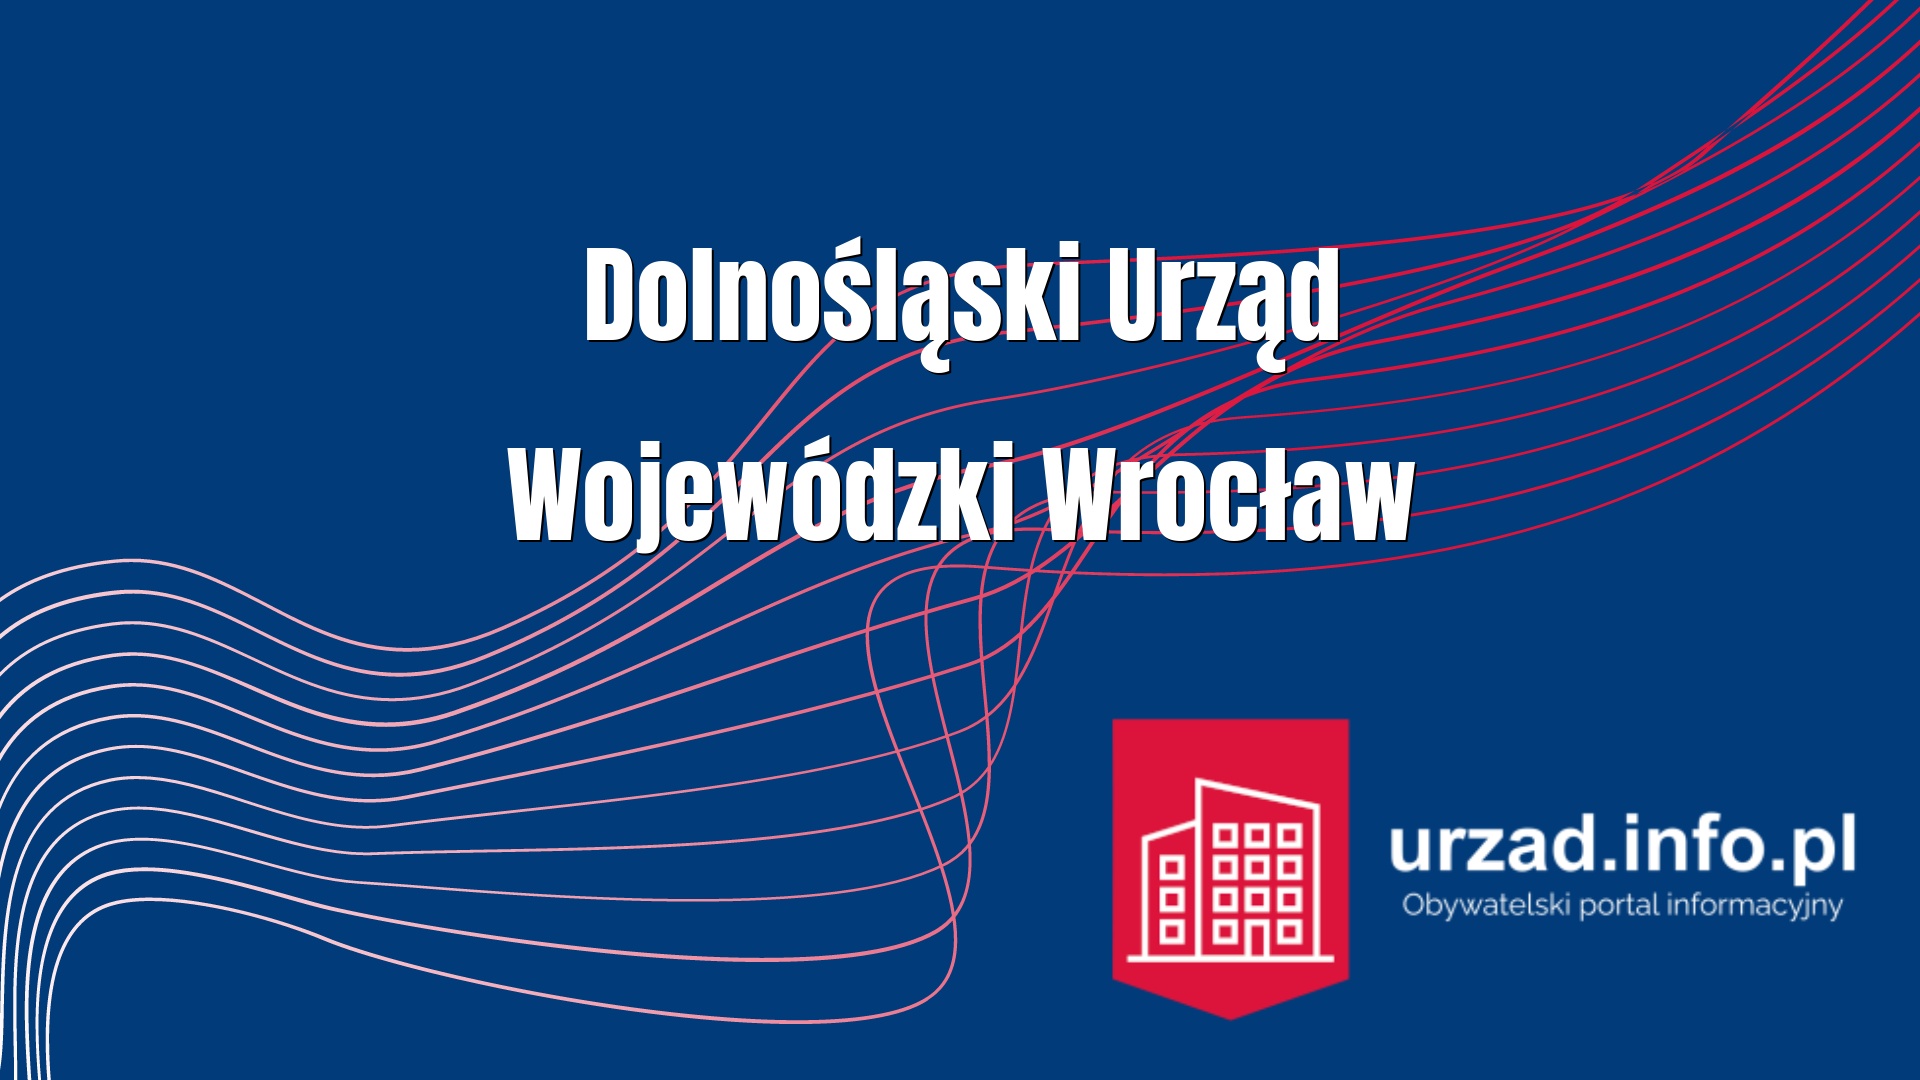 Dolnośląski Urząd Wojewódzki we Wrocław